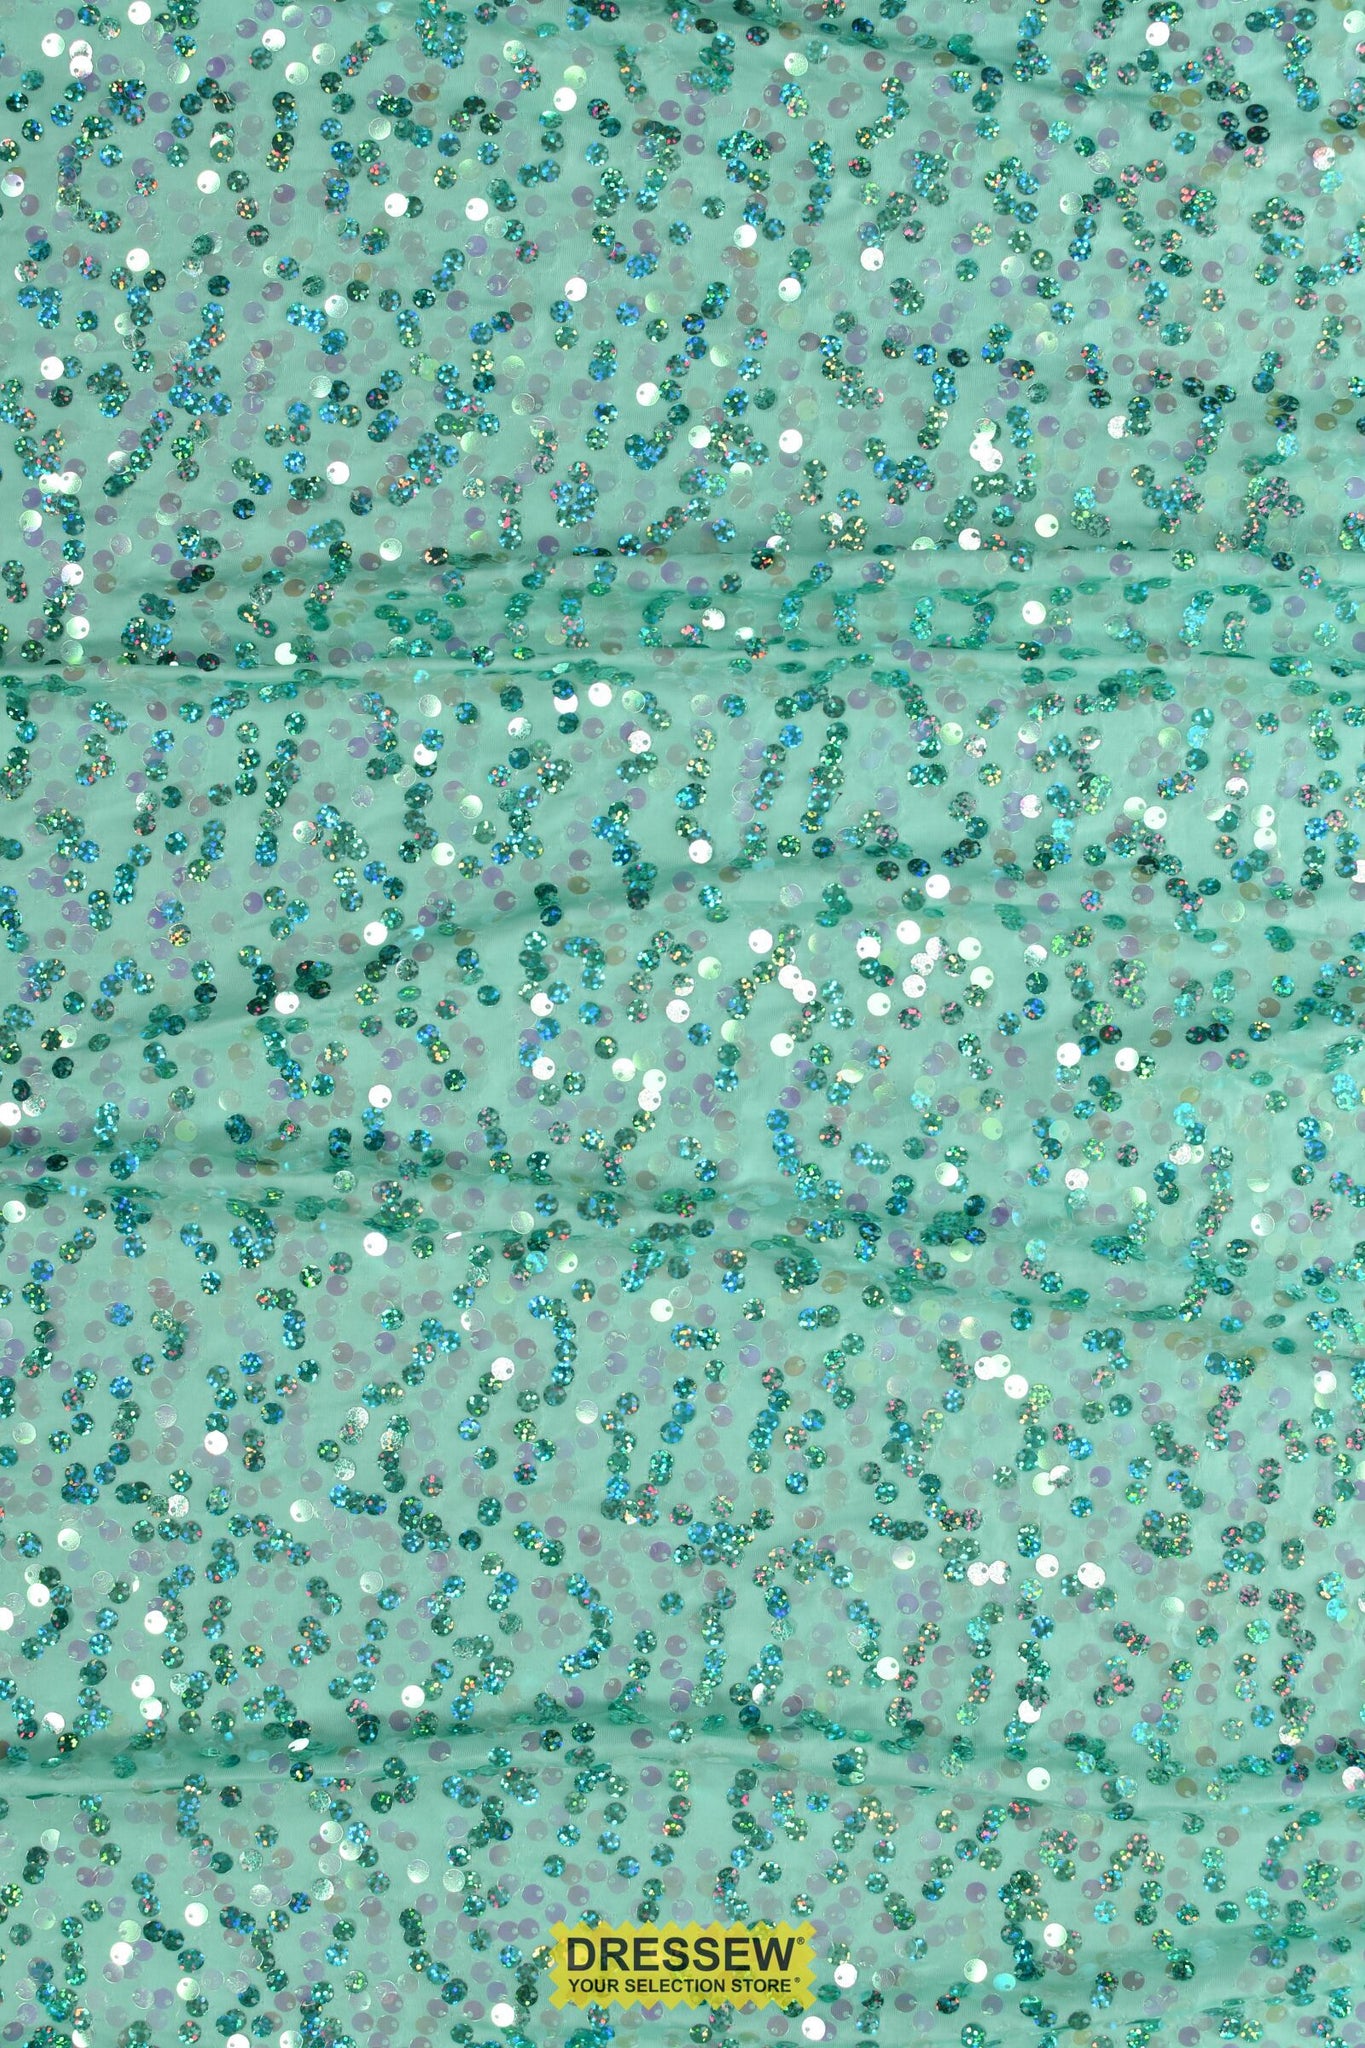 Razzle Dazzle Sequin Knit Aqua / Turquoise